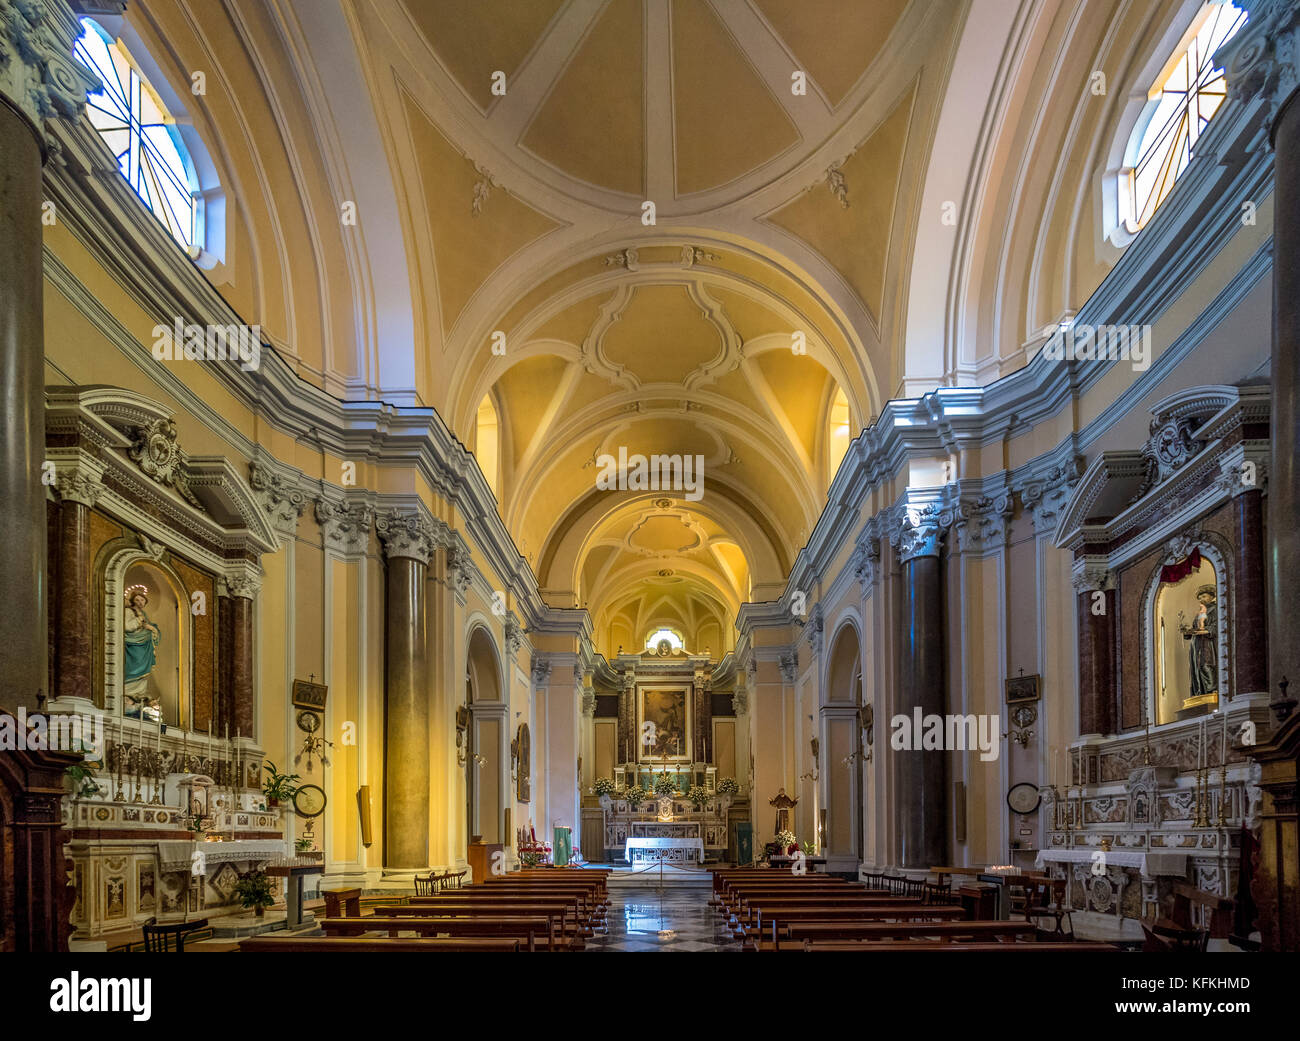 Interior of Convento San Francesco, Sorrento, Italy.   Convento San Francesco, Sorrento, Italy. Stock Photo